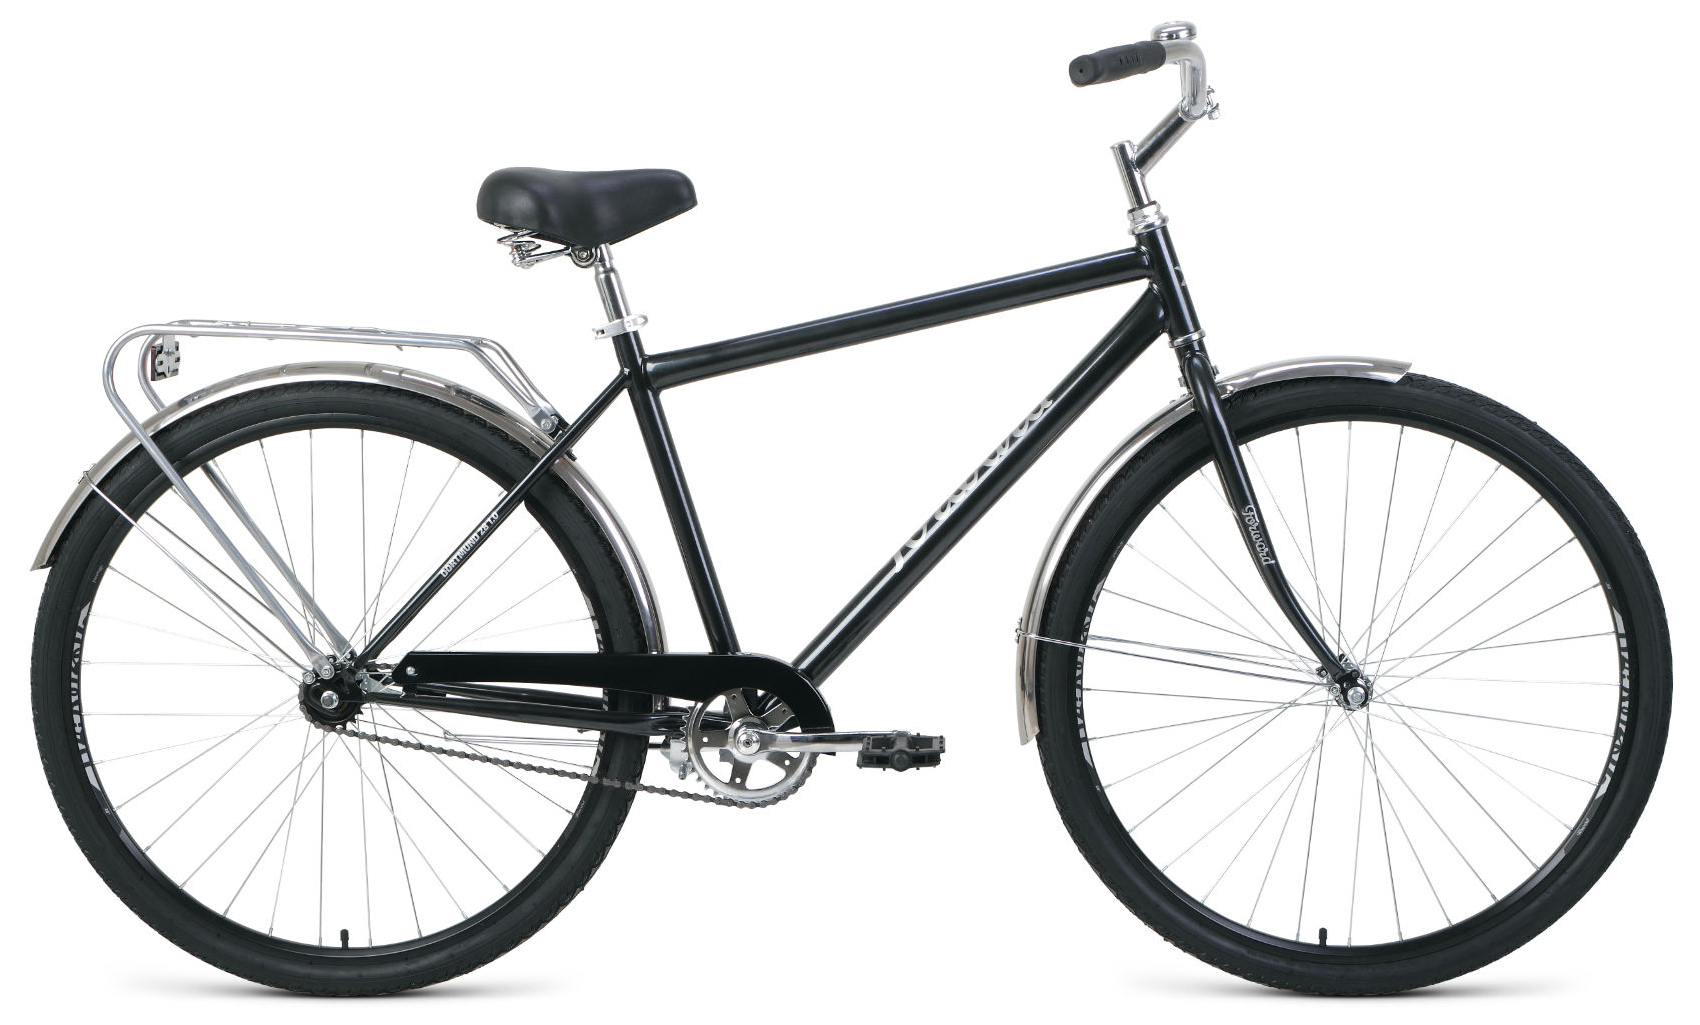  Отзывы о Городском велосипеде Forward Dortmund 28 1.0 2020